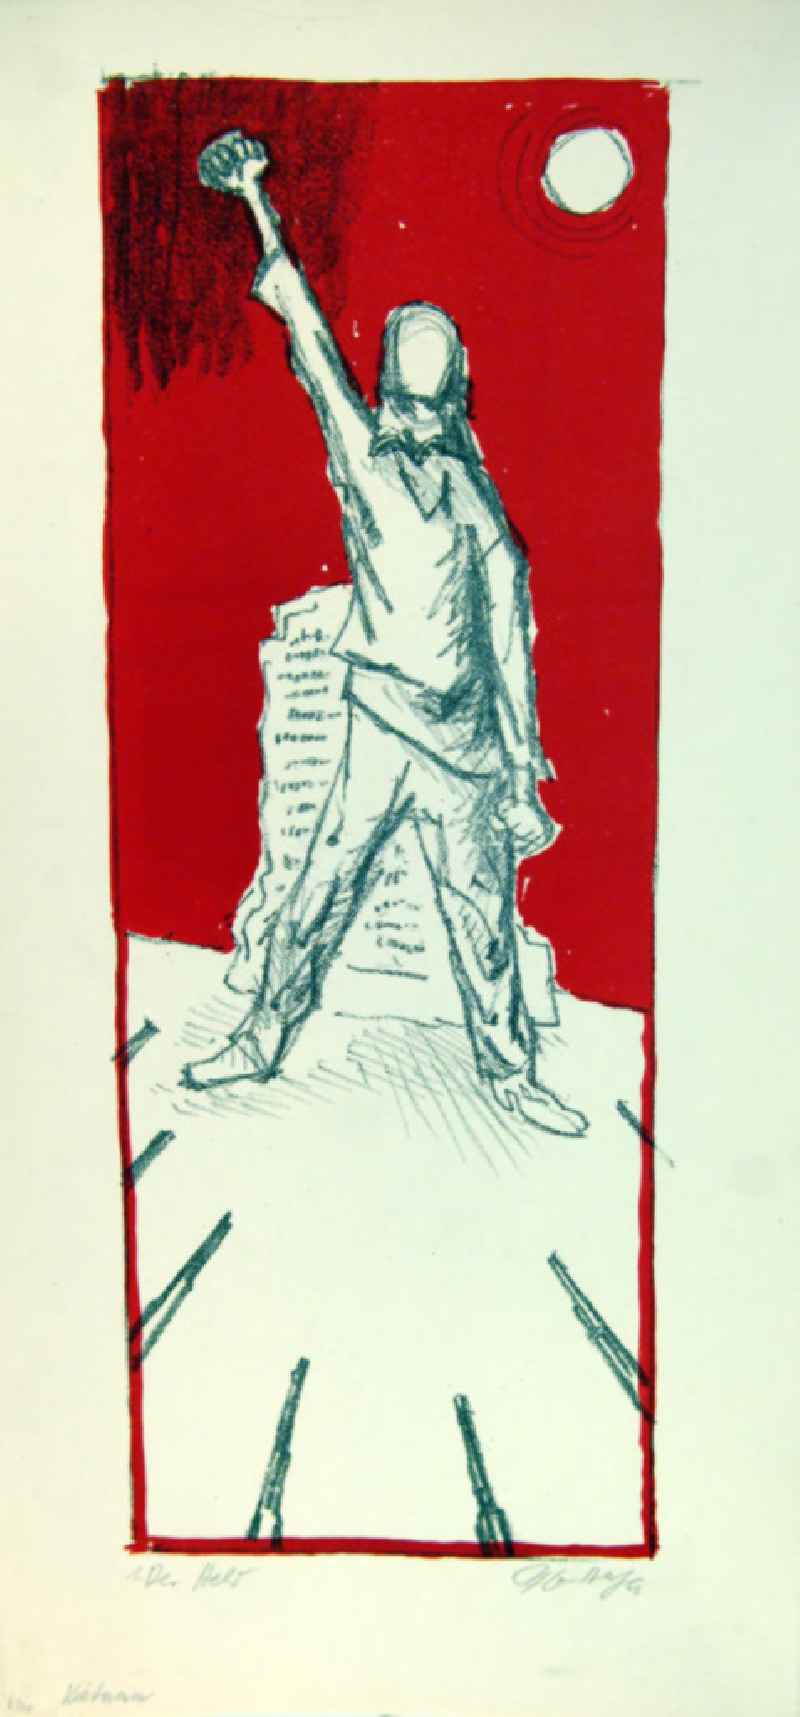 Grafik von Herbert Sandberg 'Vietnam 1. Der Held' aus dem Jahr 1966, 47,0x18,0cm Farb-Lithographie, handsigniert, 6/2